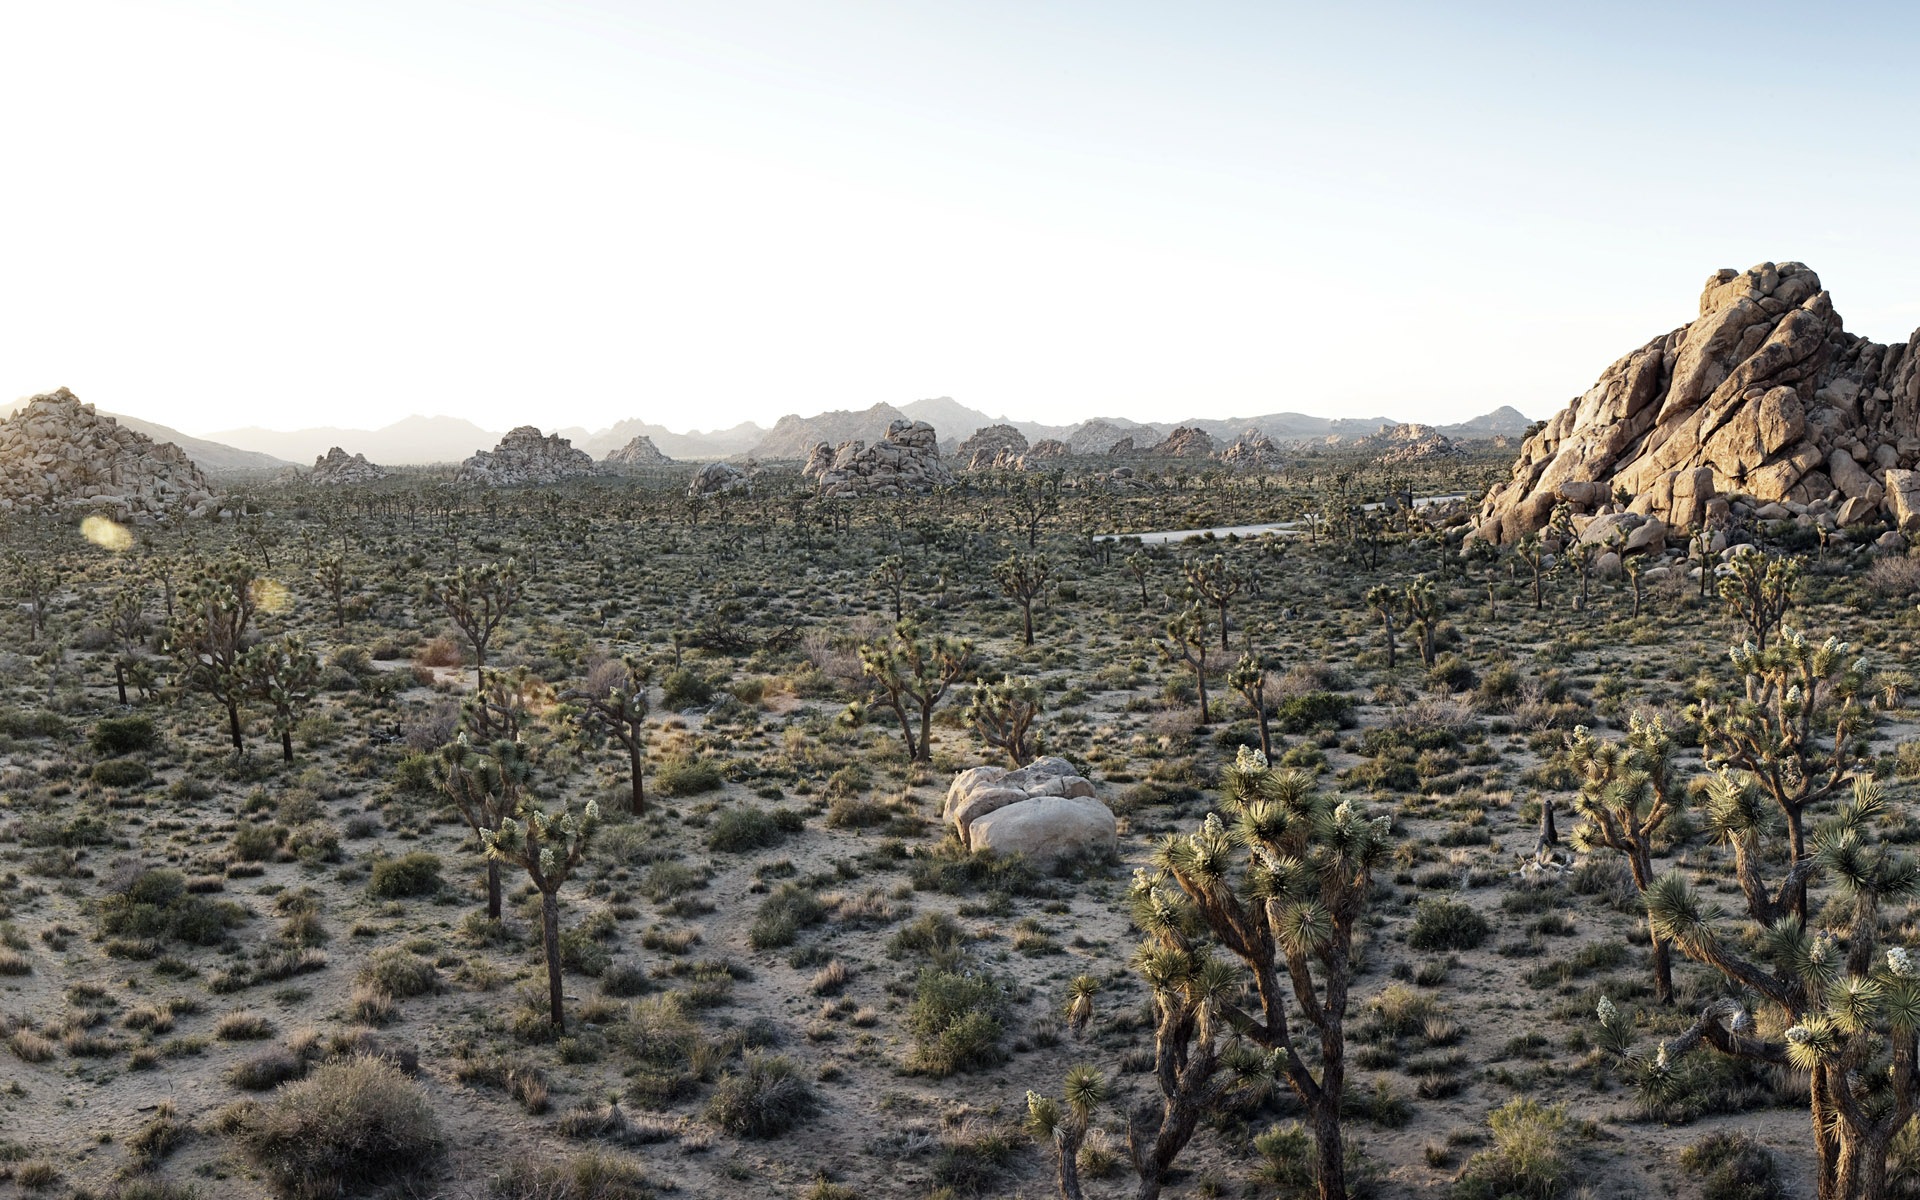 Les déserts chauds et arides, de Windows 8 fonds d'écran widescreen panoramique #9 - 1920x1200